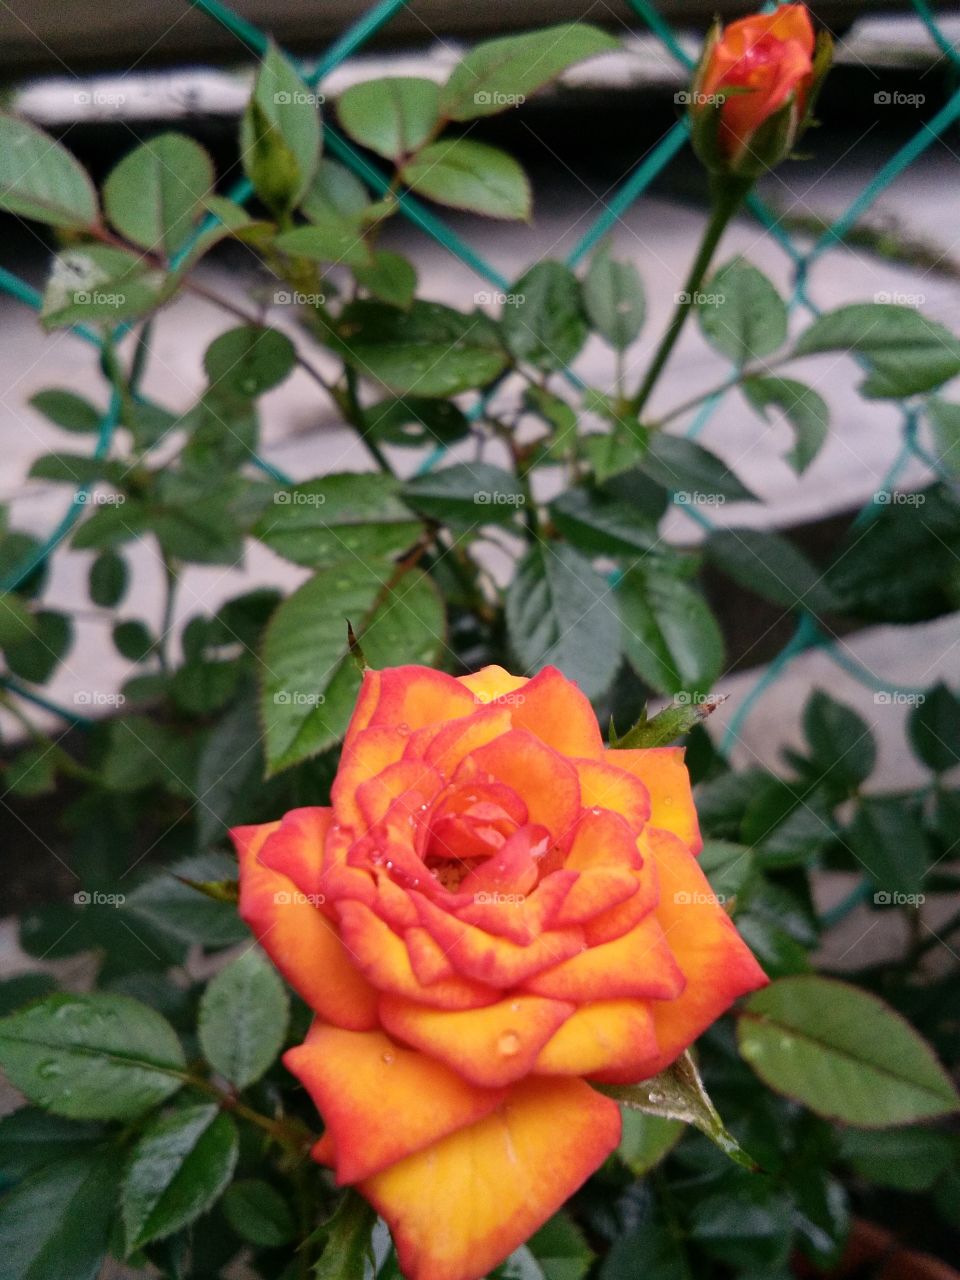 peach orange rose